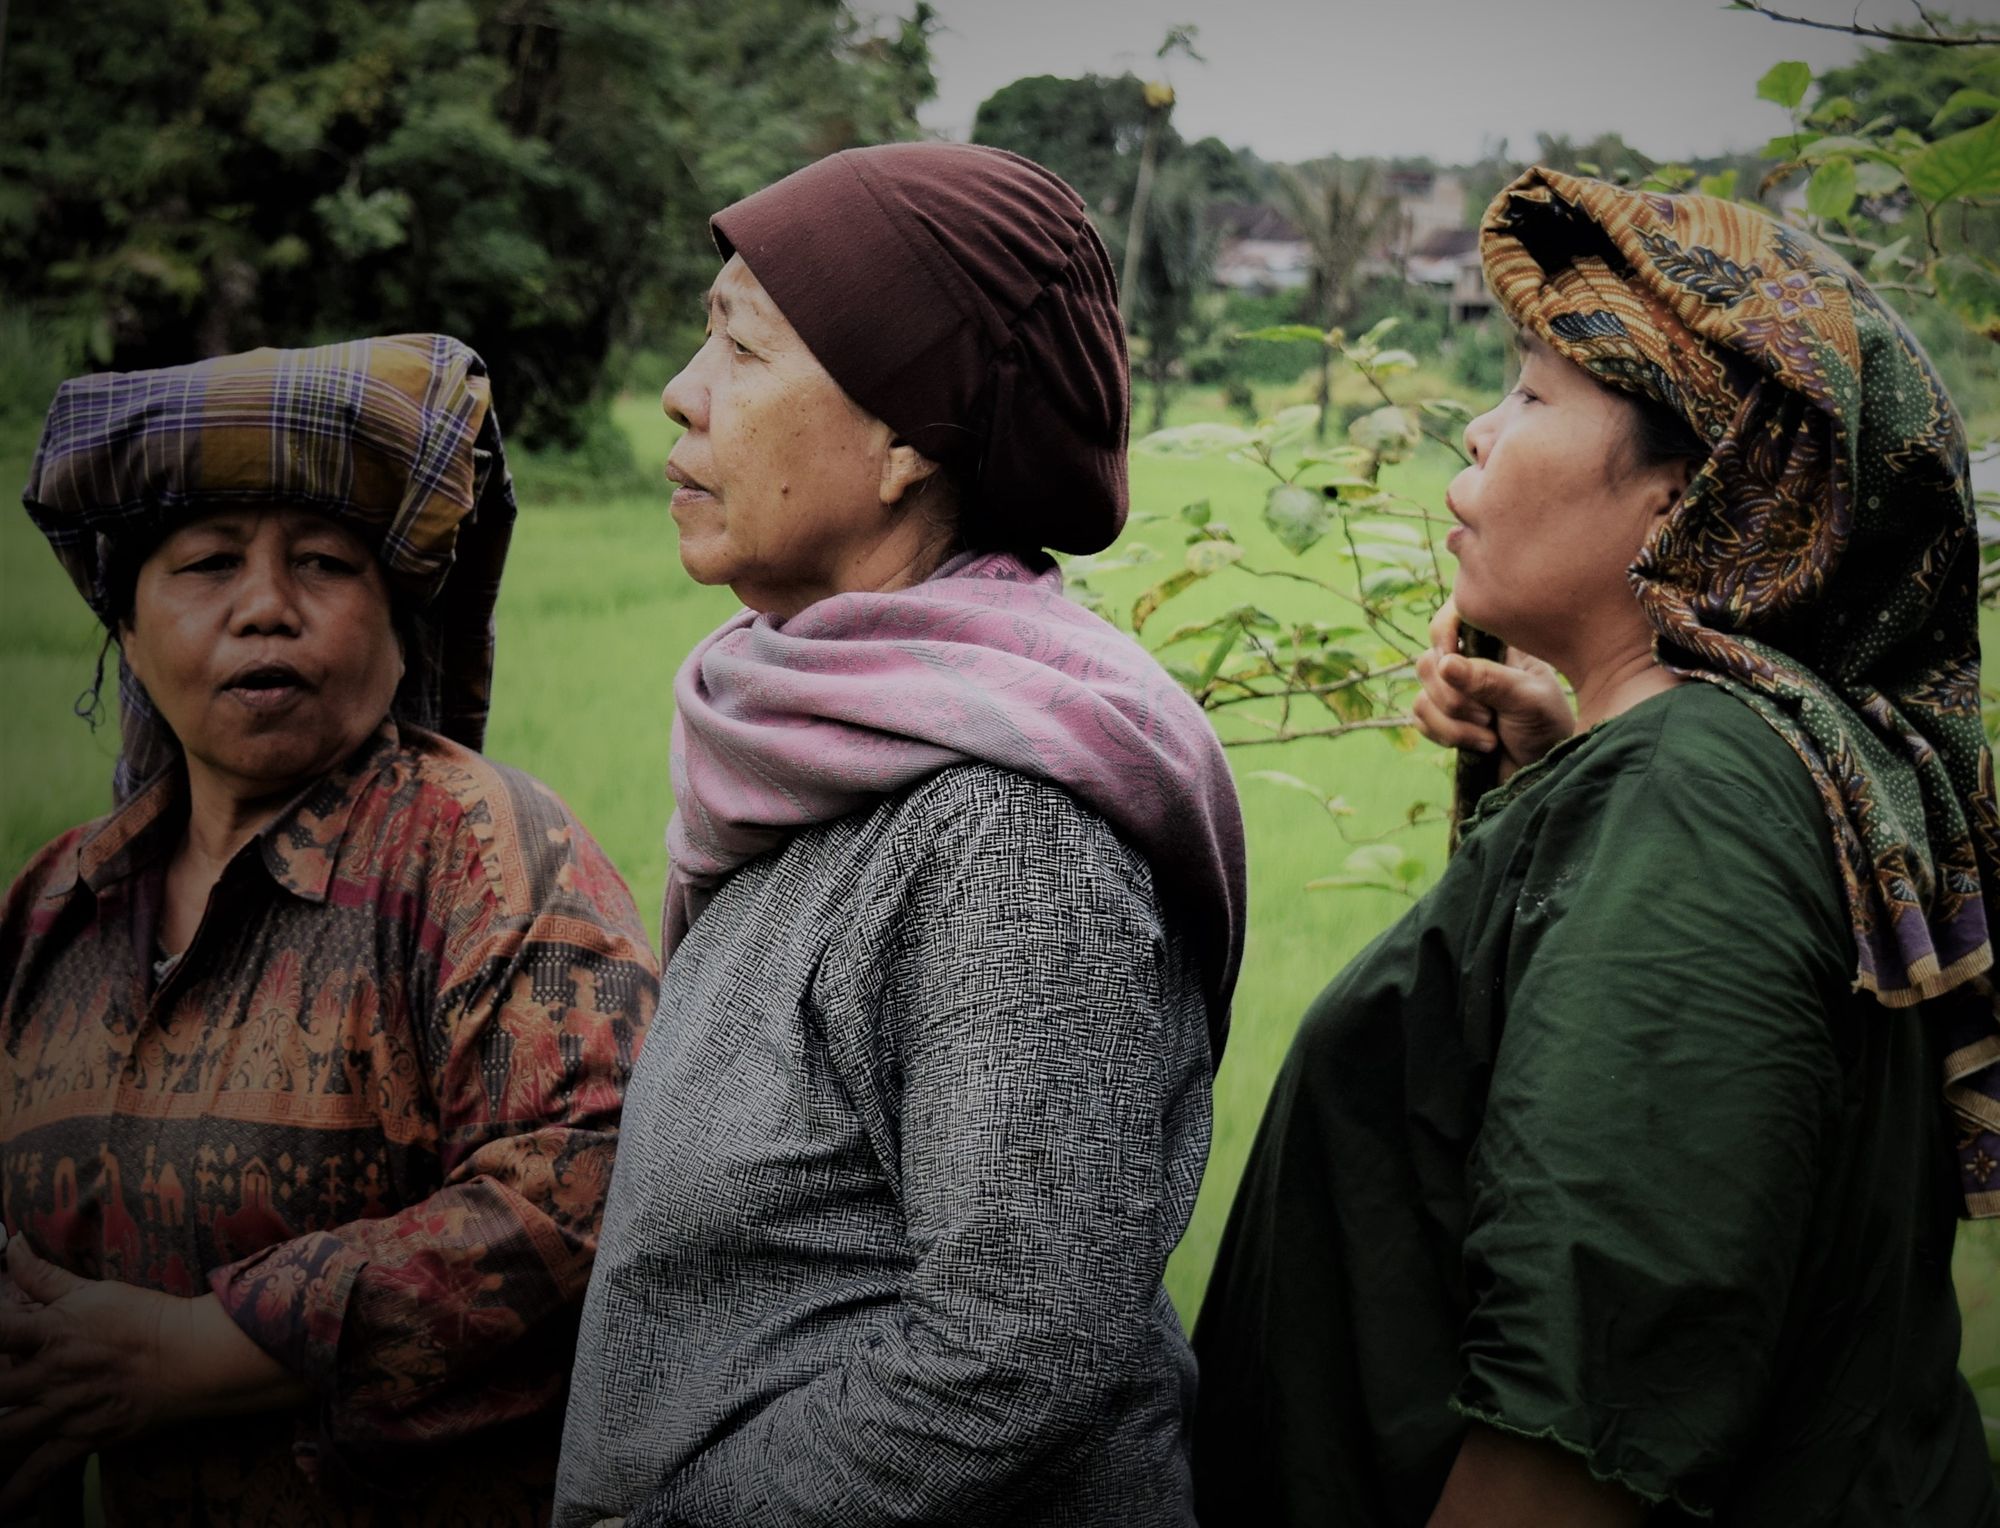 Musik dan Gender: Peran Perempuan dalam Sistem Kekerabatan Patrilineal Etnis Batak